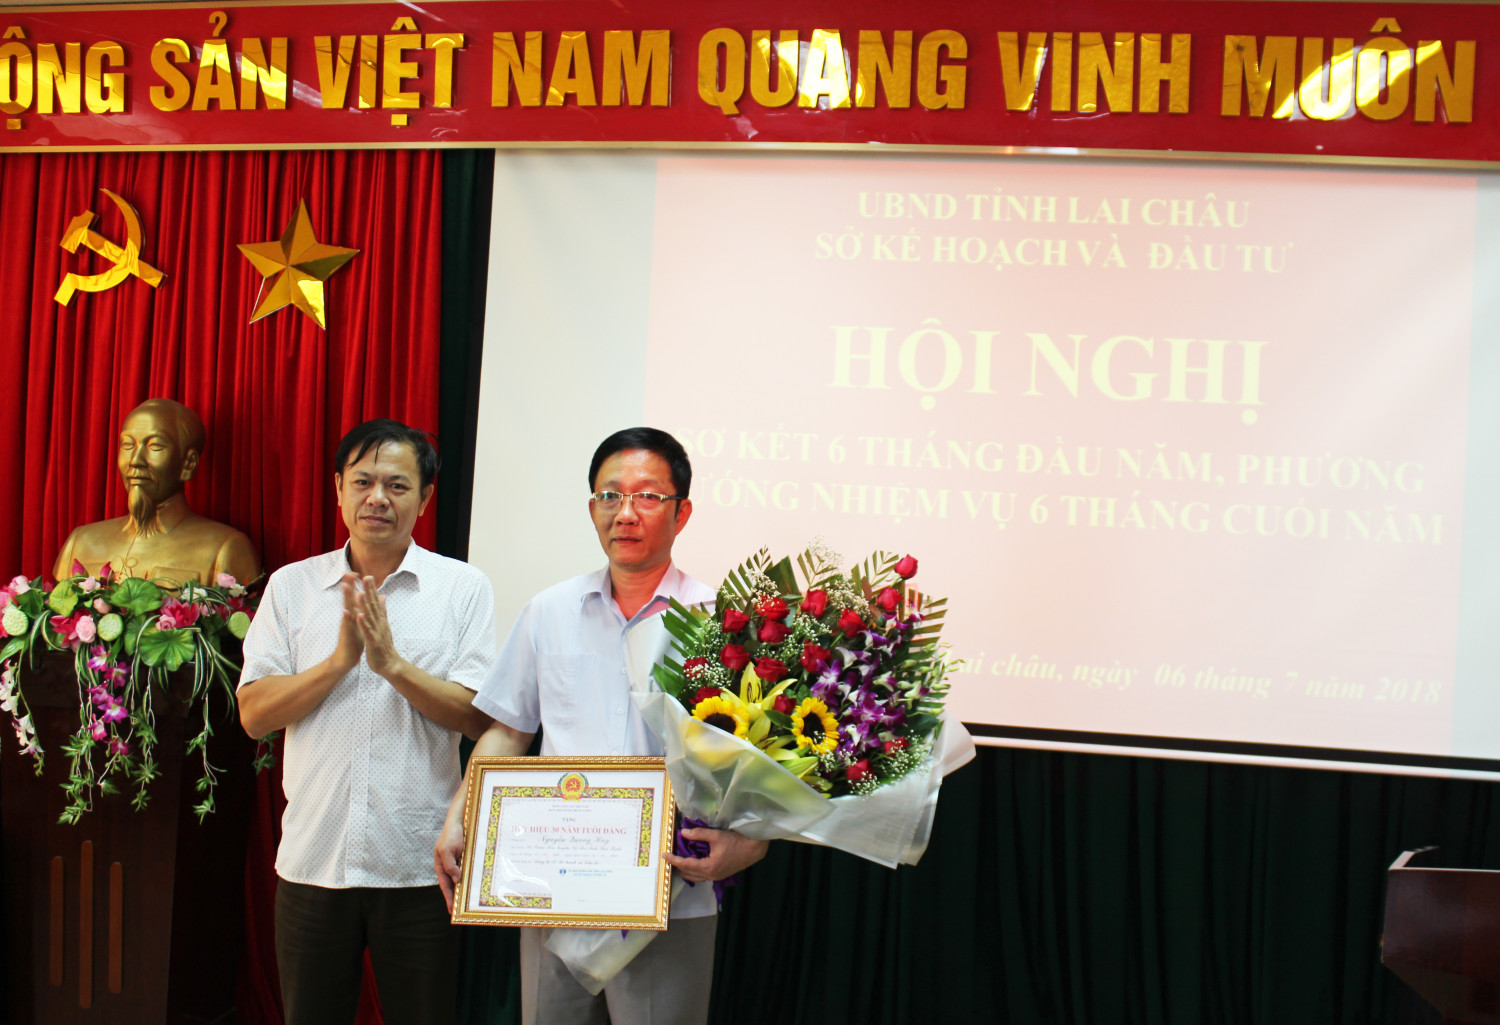 Đồng chí Đặng Văn Châu – Phó Bí thư Đảng bộ trao quyết định và huy hiệu 30 năm tuổi Đảng cho đồng chí Nguyễn Quang Huy.